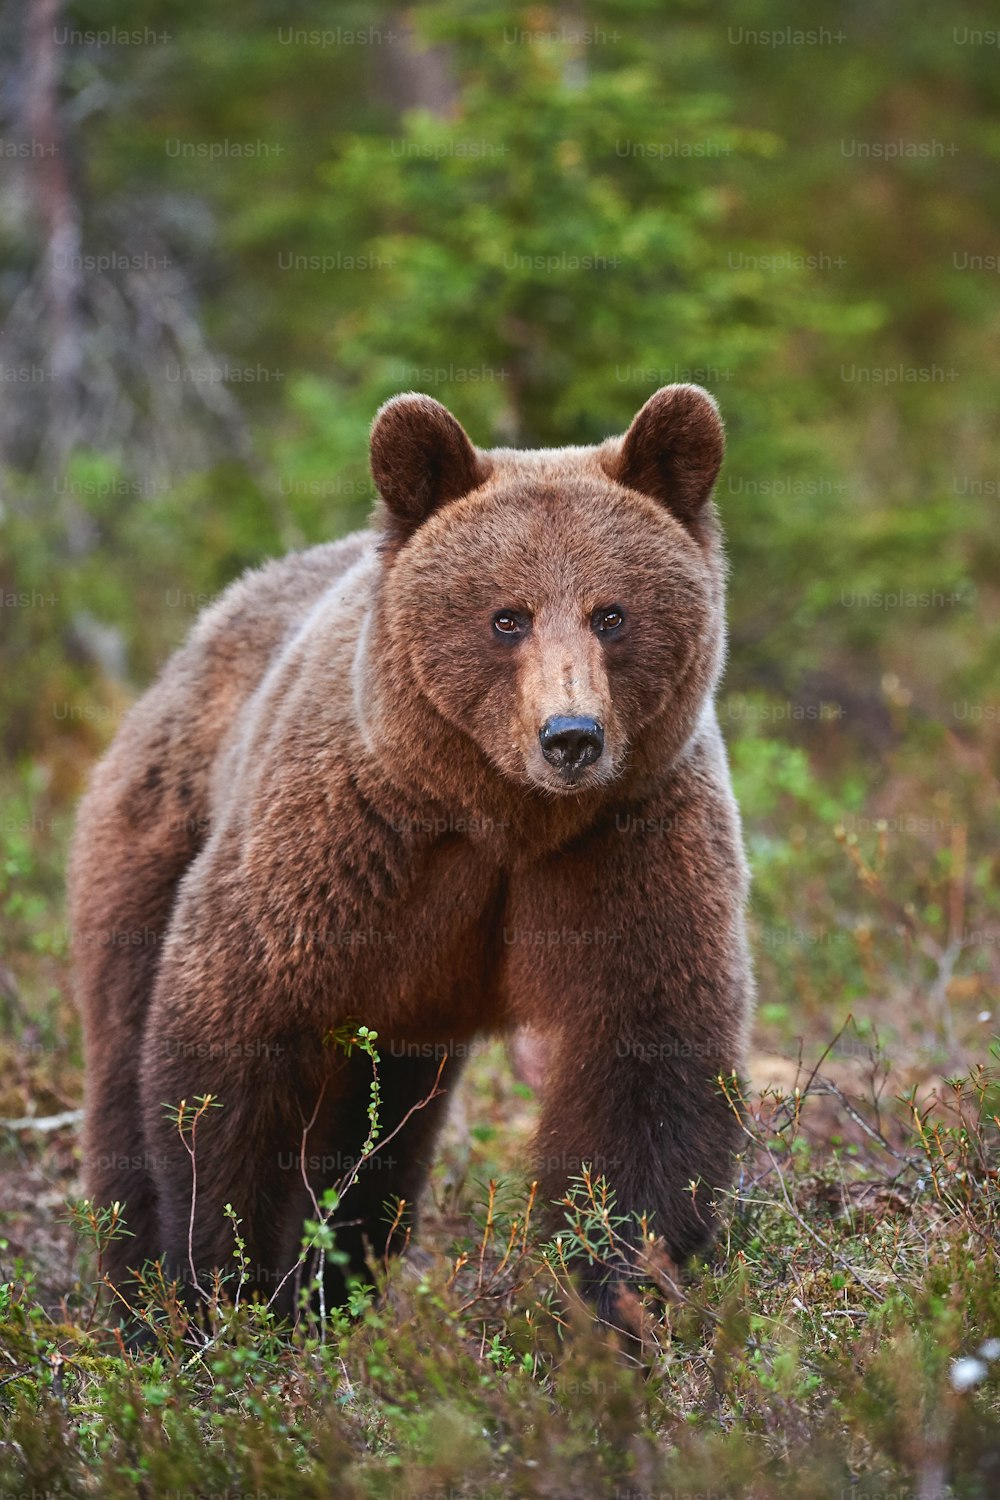 Belle femelle ours brun (Ursus arctos) photographiée de face alors qu’elle se promenait dans la taïga sauvage du nord.